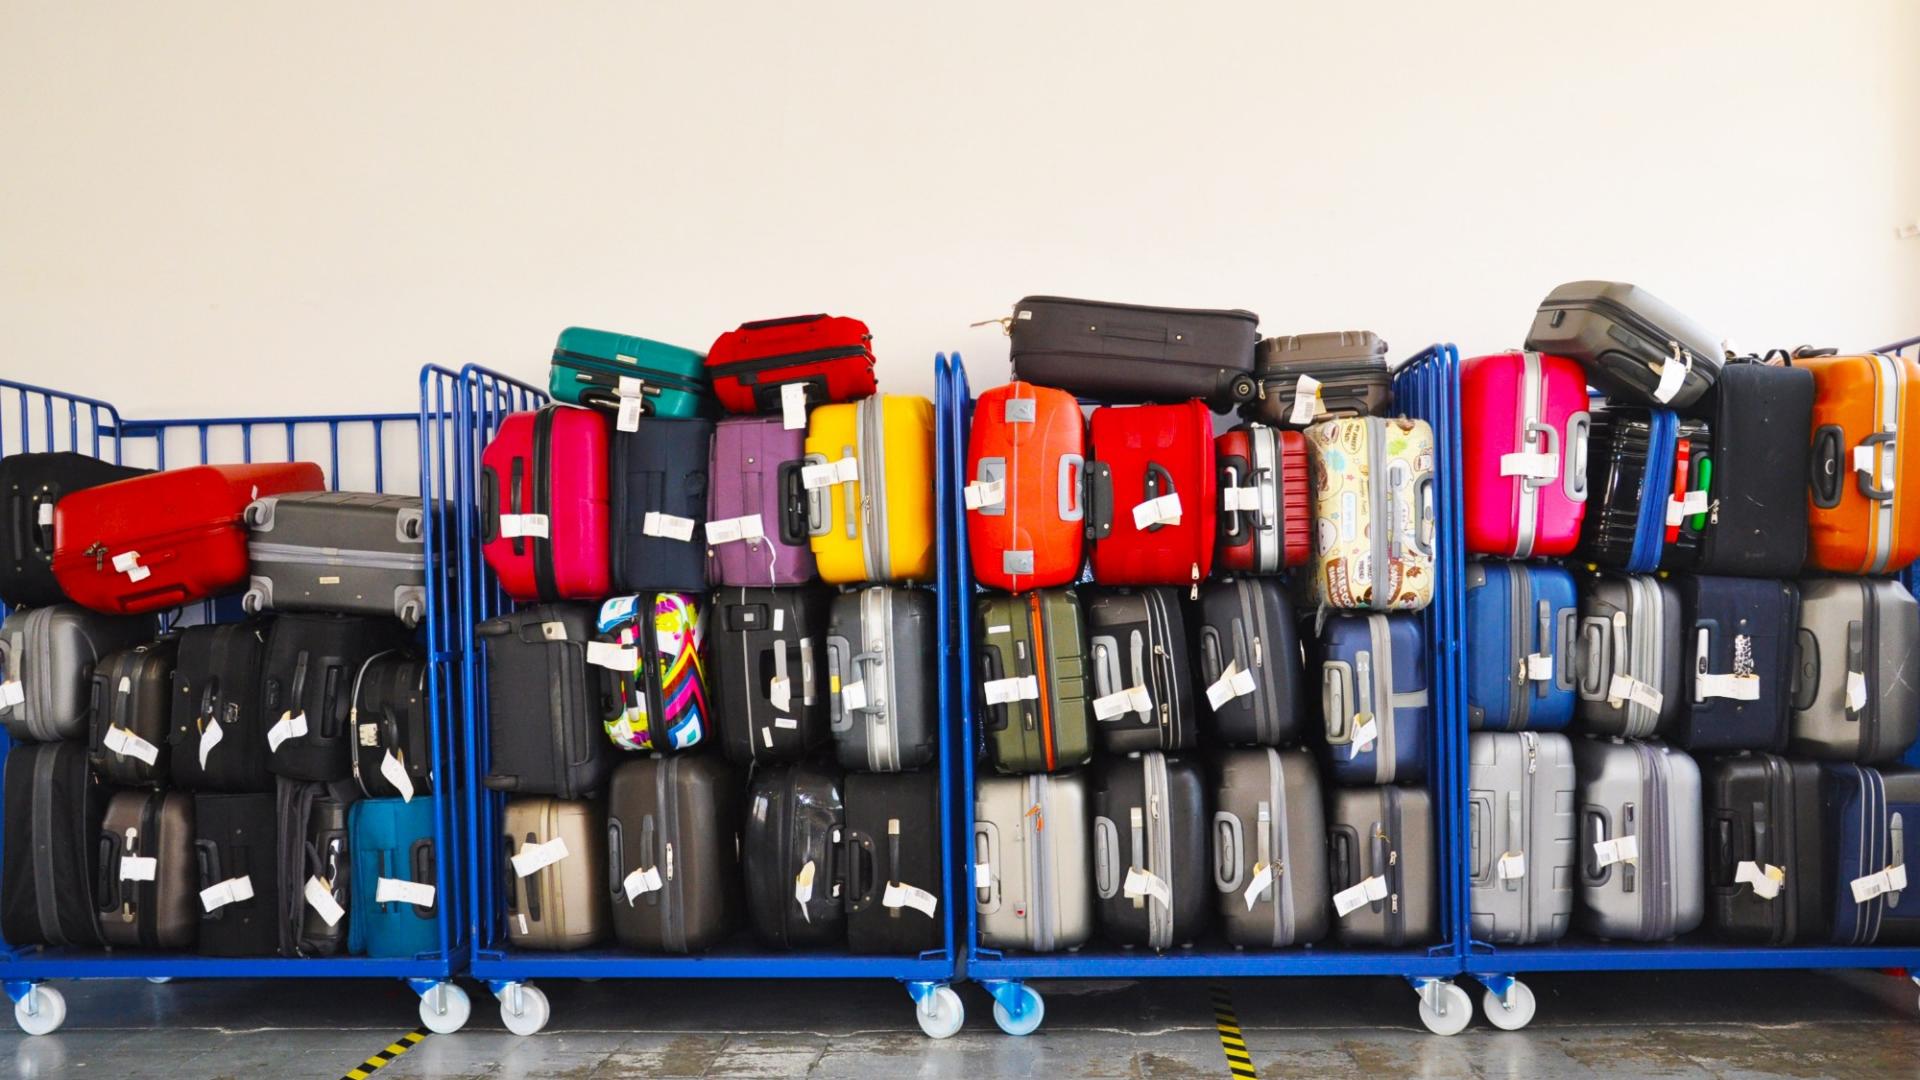 Eine Vielzahl bunter, verschieden farbiger Koffer in großen Wagen vor einer Wand